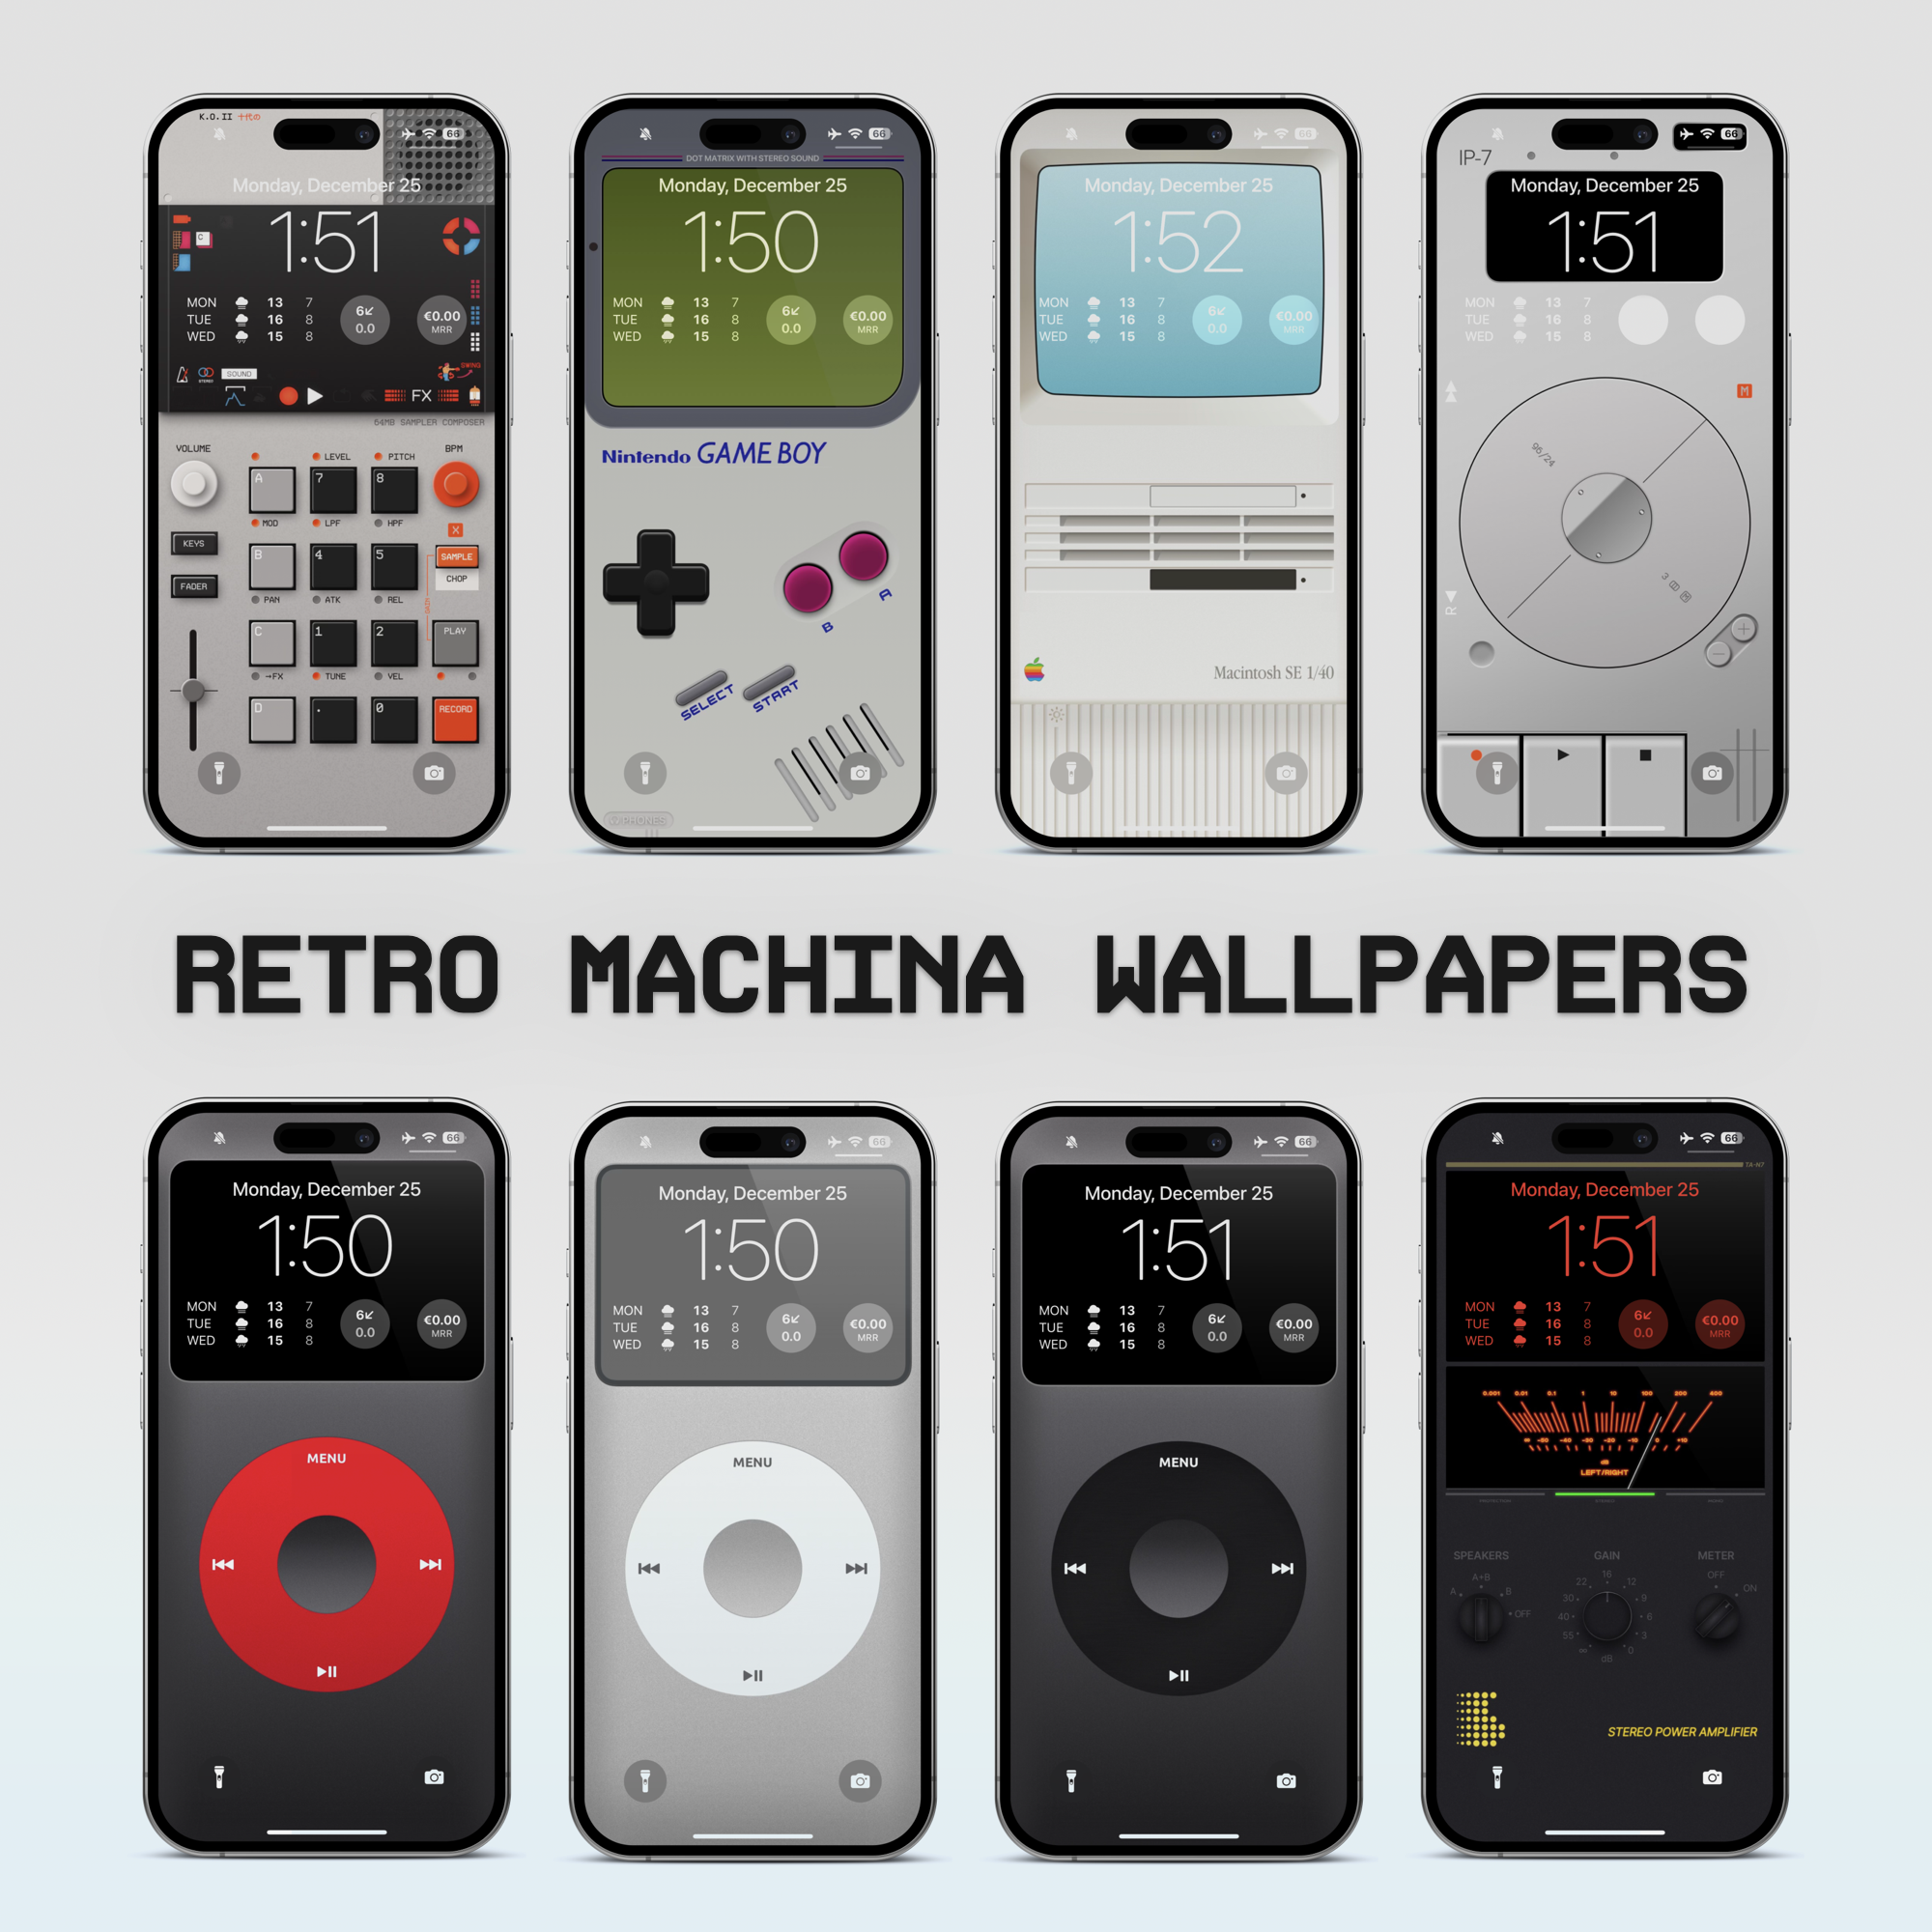 Retro Machina Wallpaper Pack